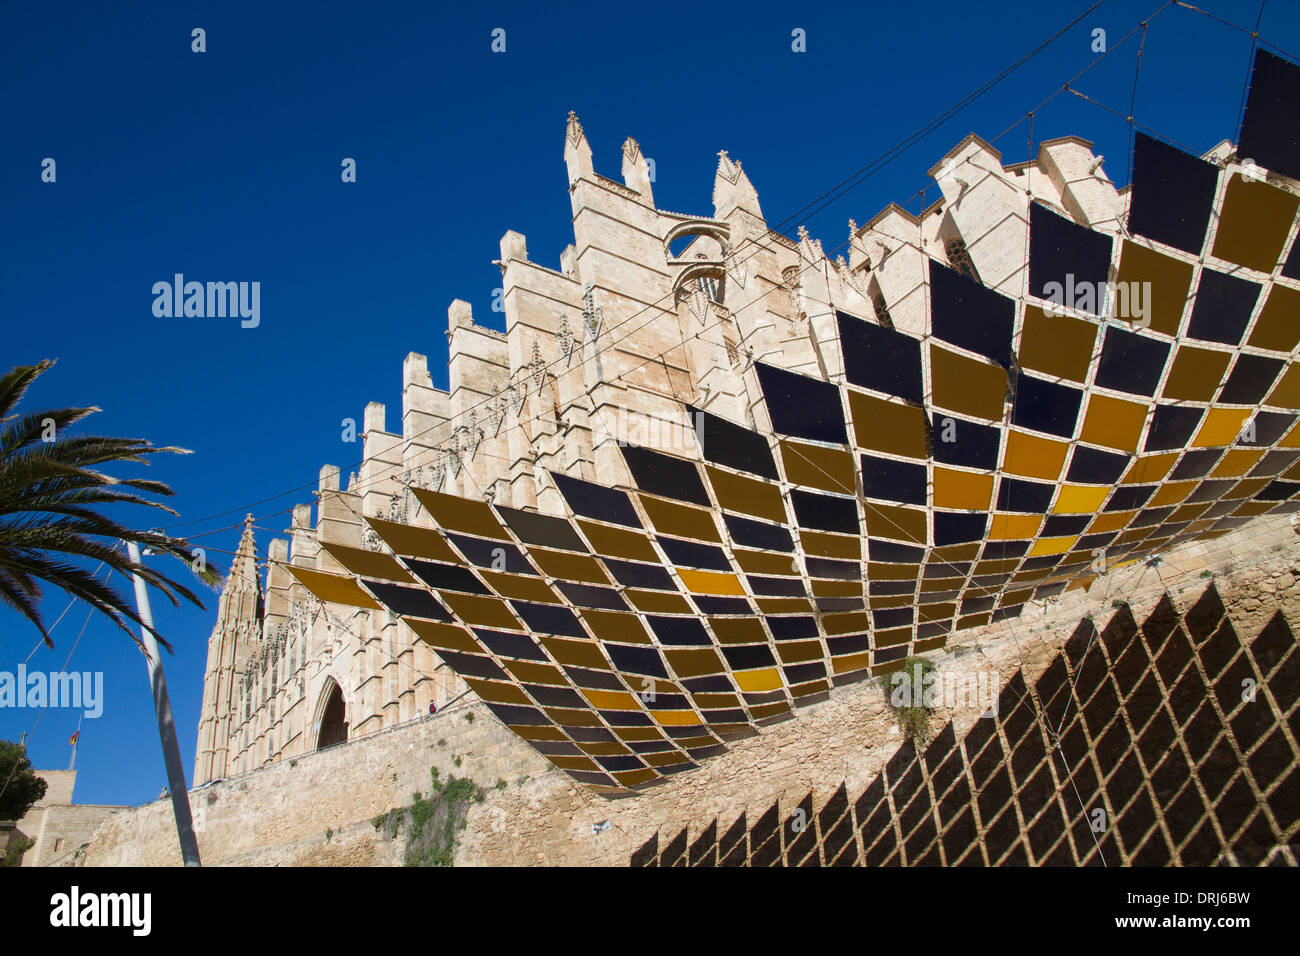 Cathédrale De Palma Cathédrale De Palma De Majorque, Iles Baléares Catalogne Espagne Banque D'Images